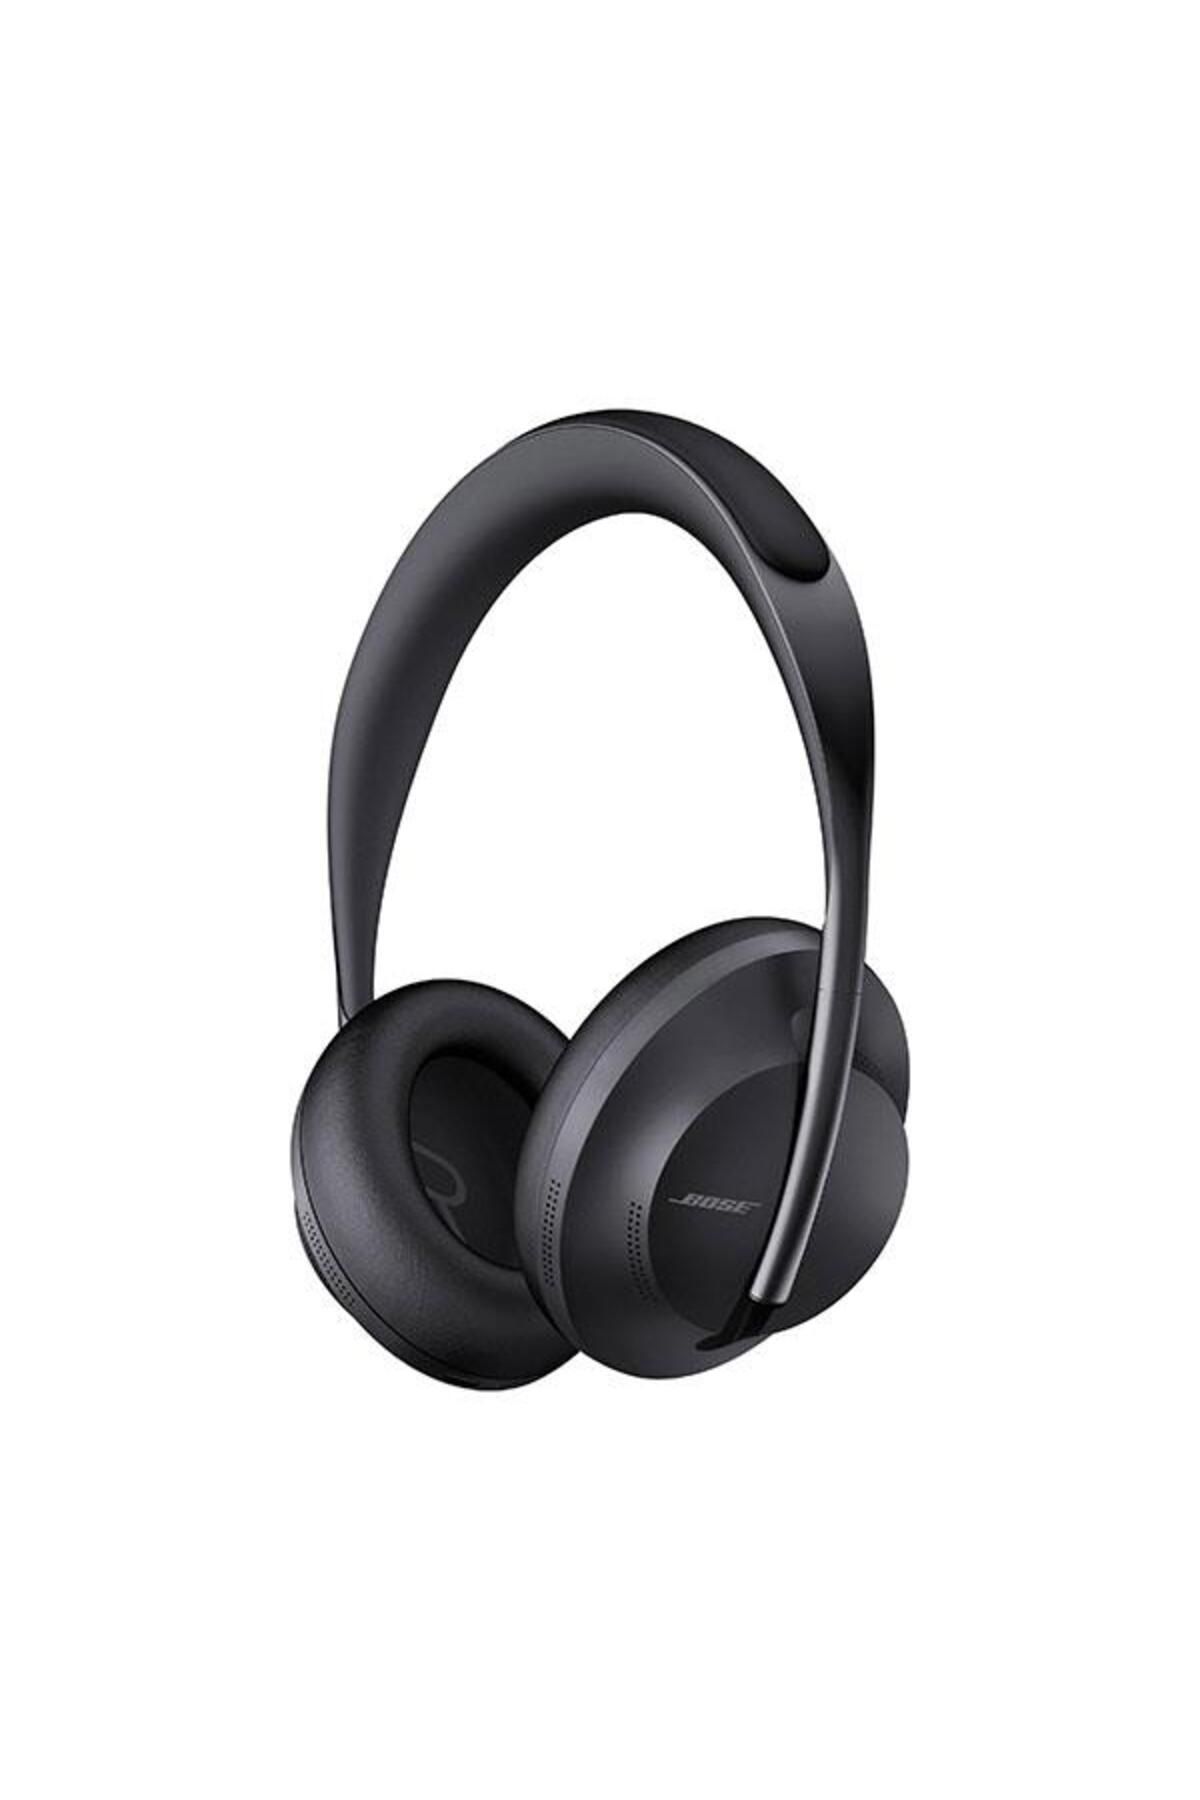 Bose Headphones Noise Cancelling 700 Siyah Kulaklık ( Türkiye)